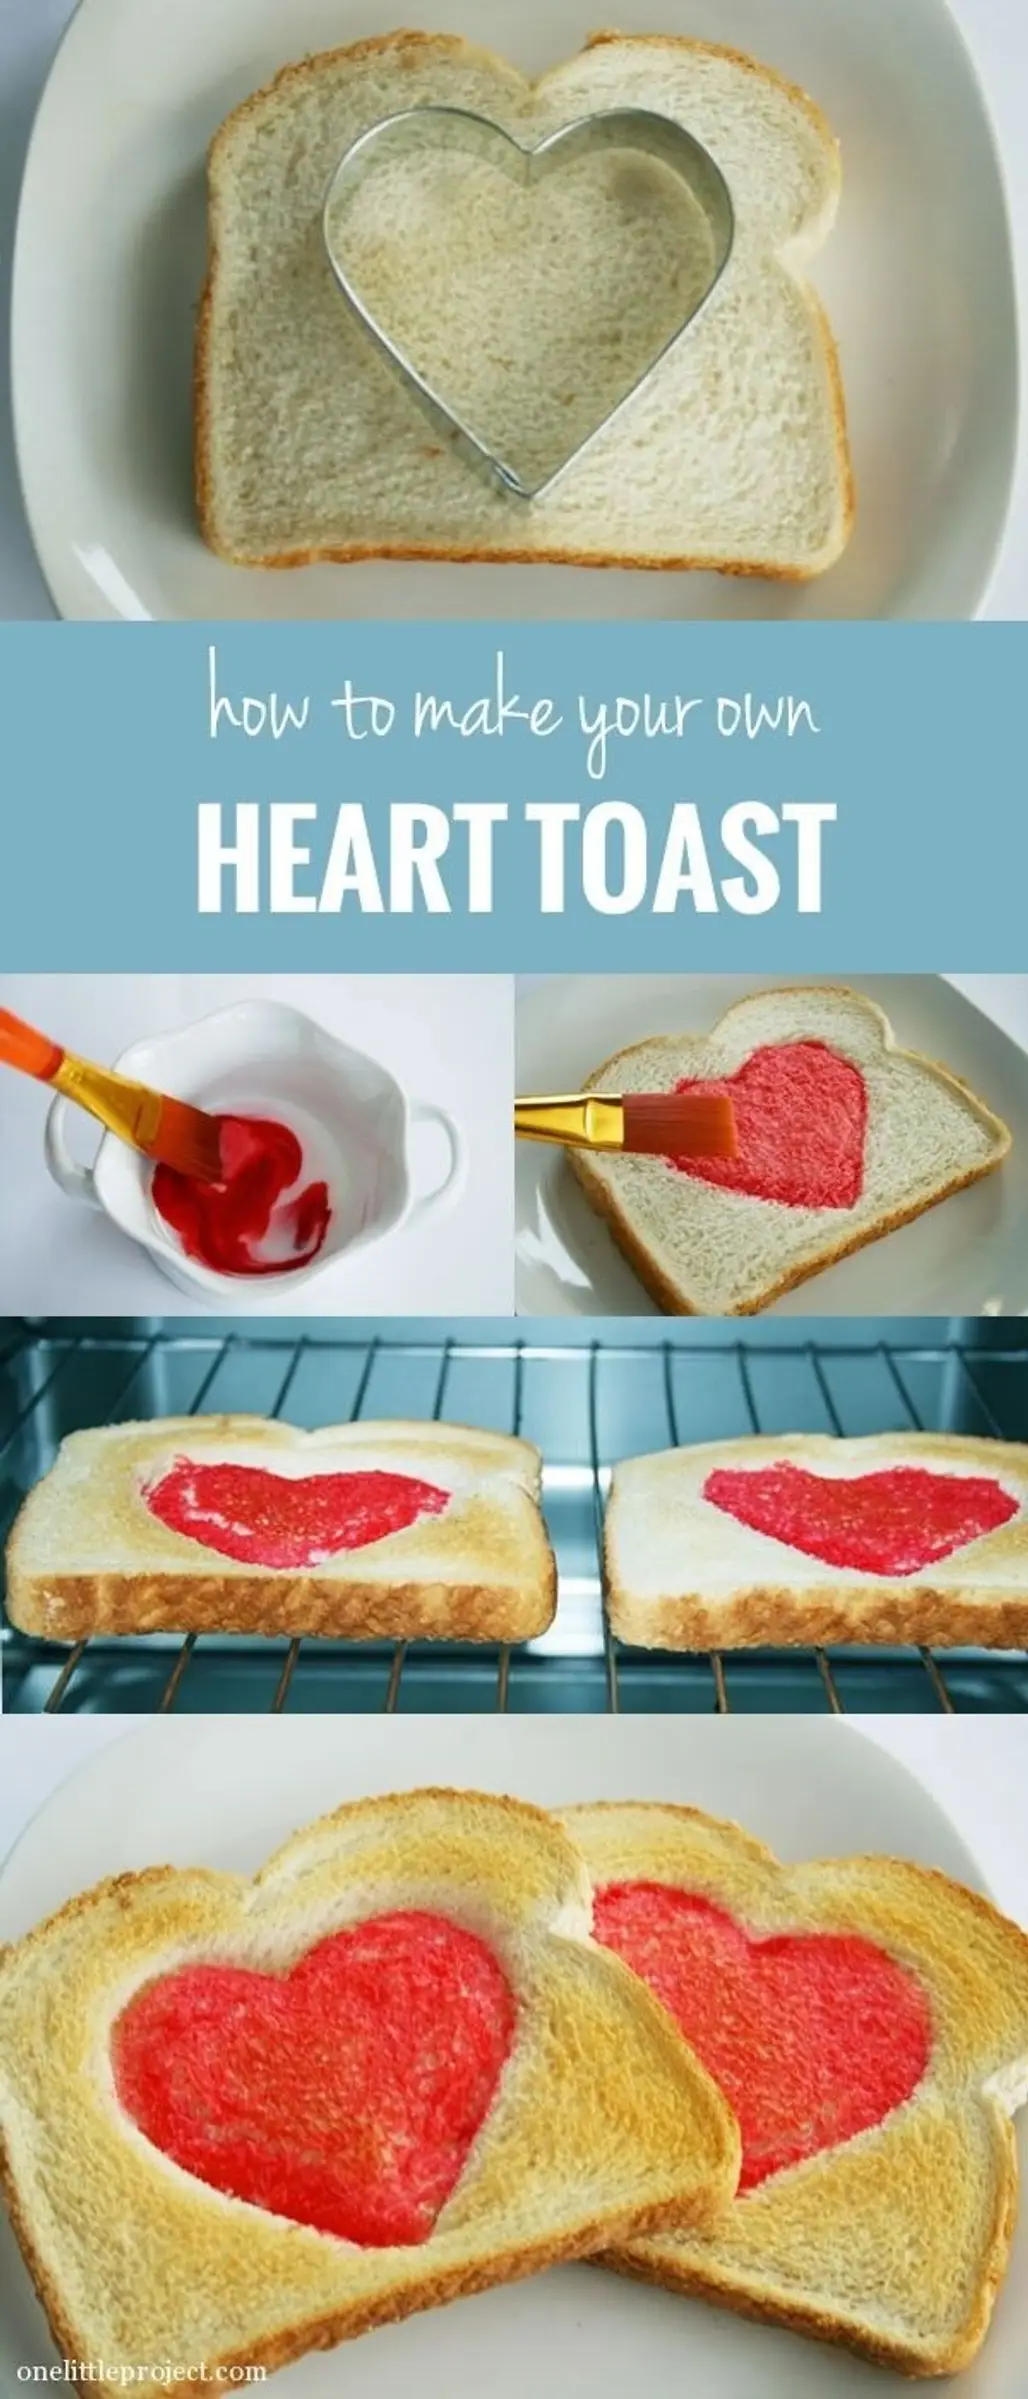 Heart Toast